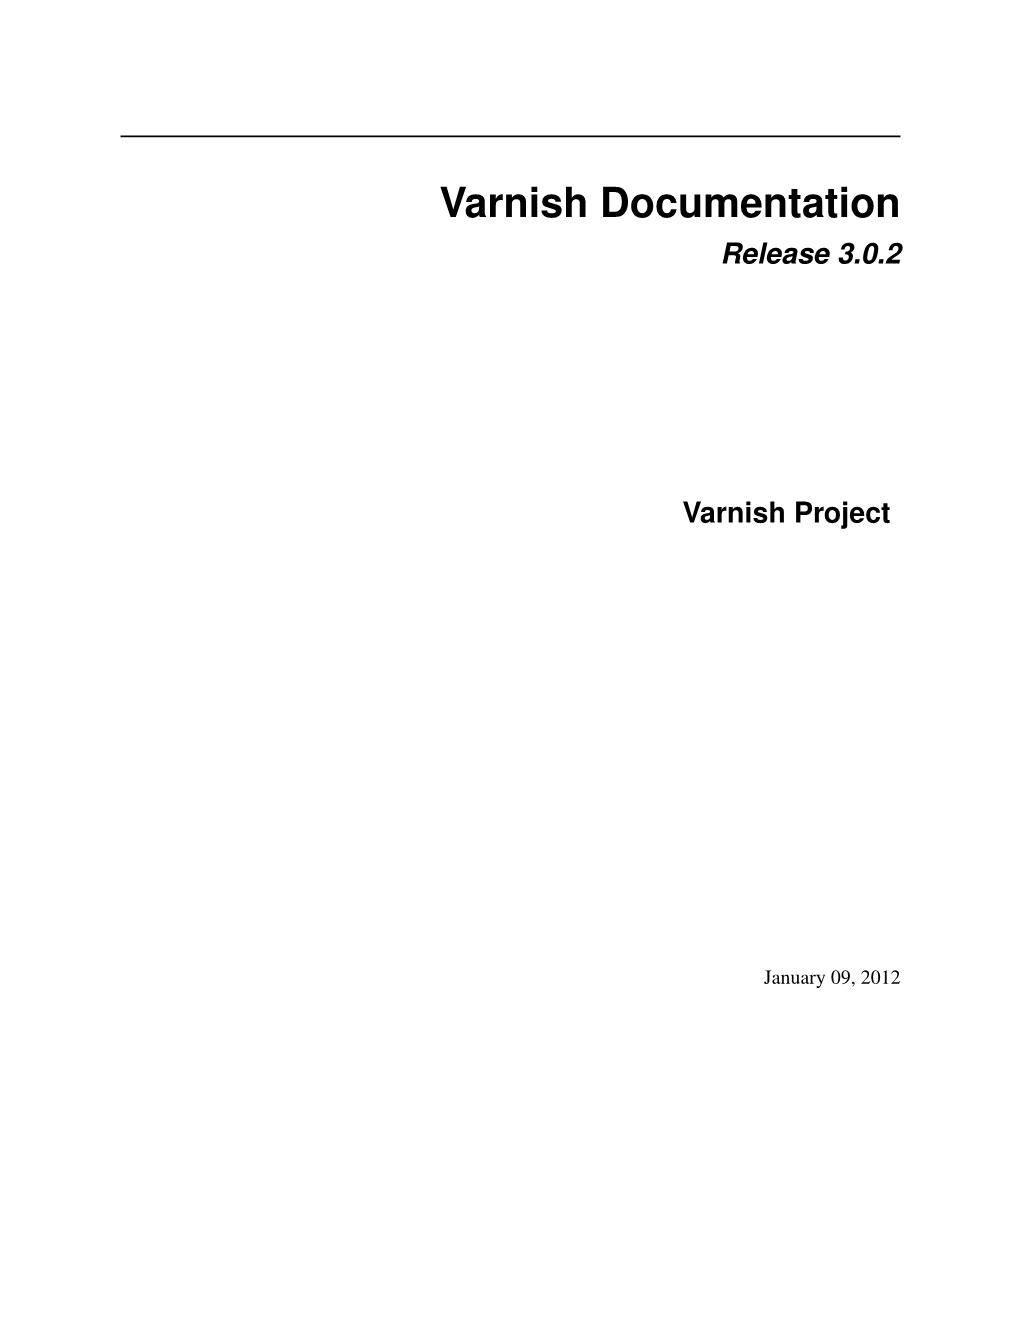 Varnish Documentation Release 3.0.2